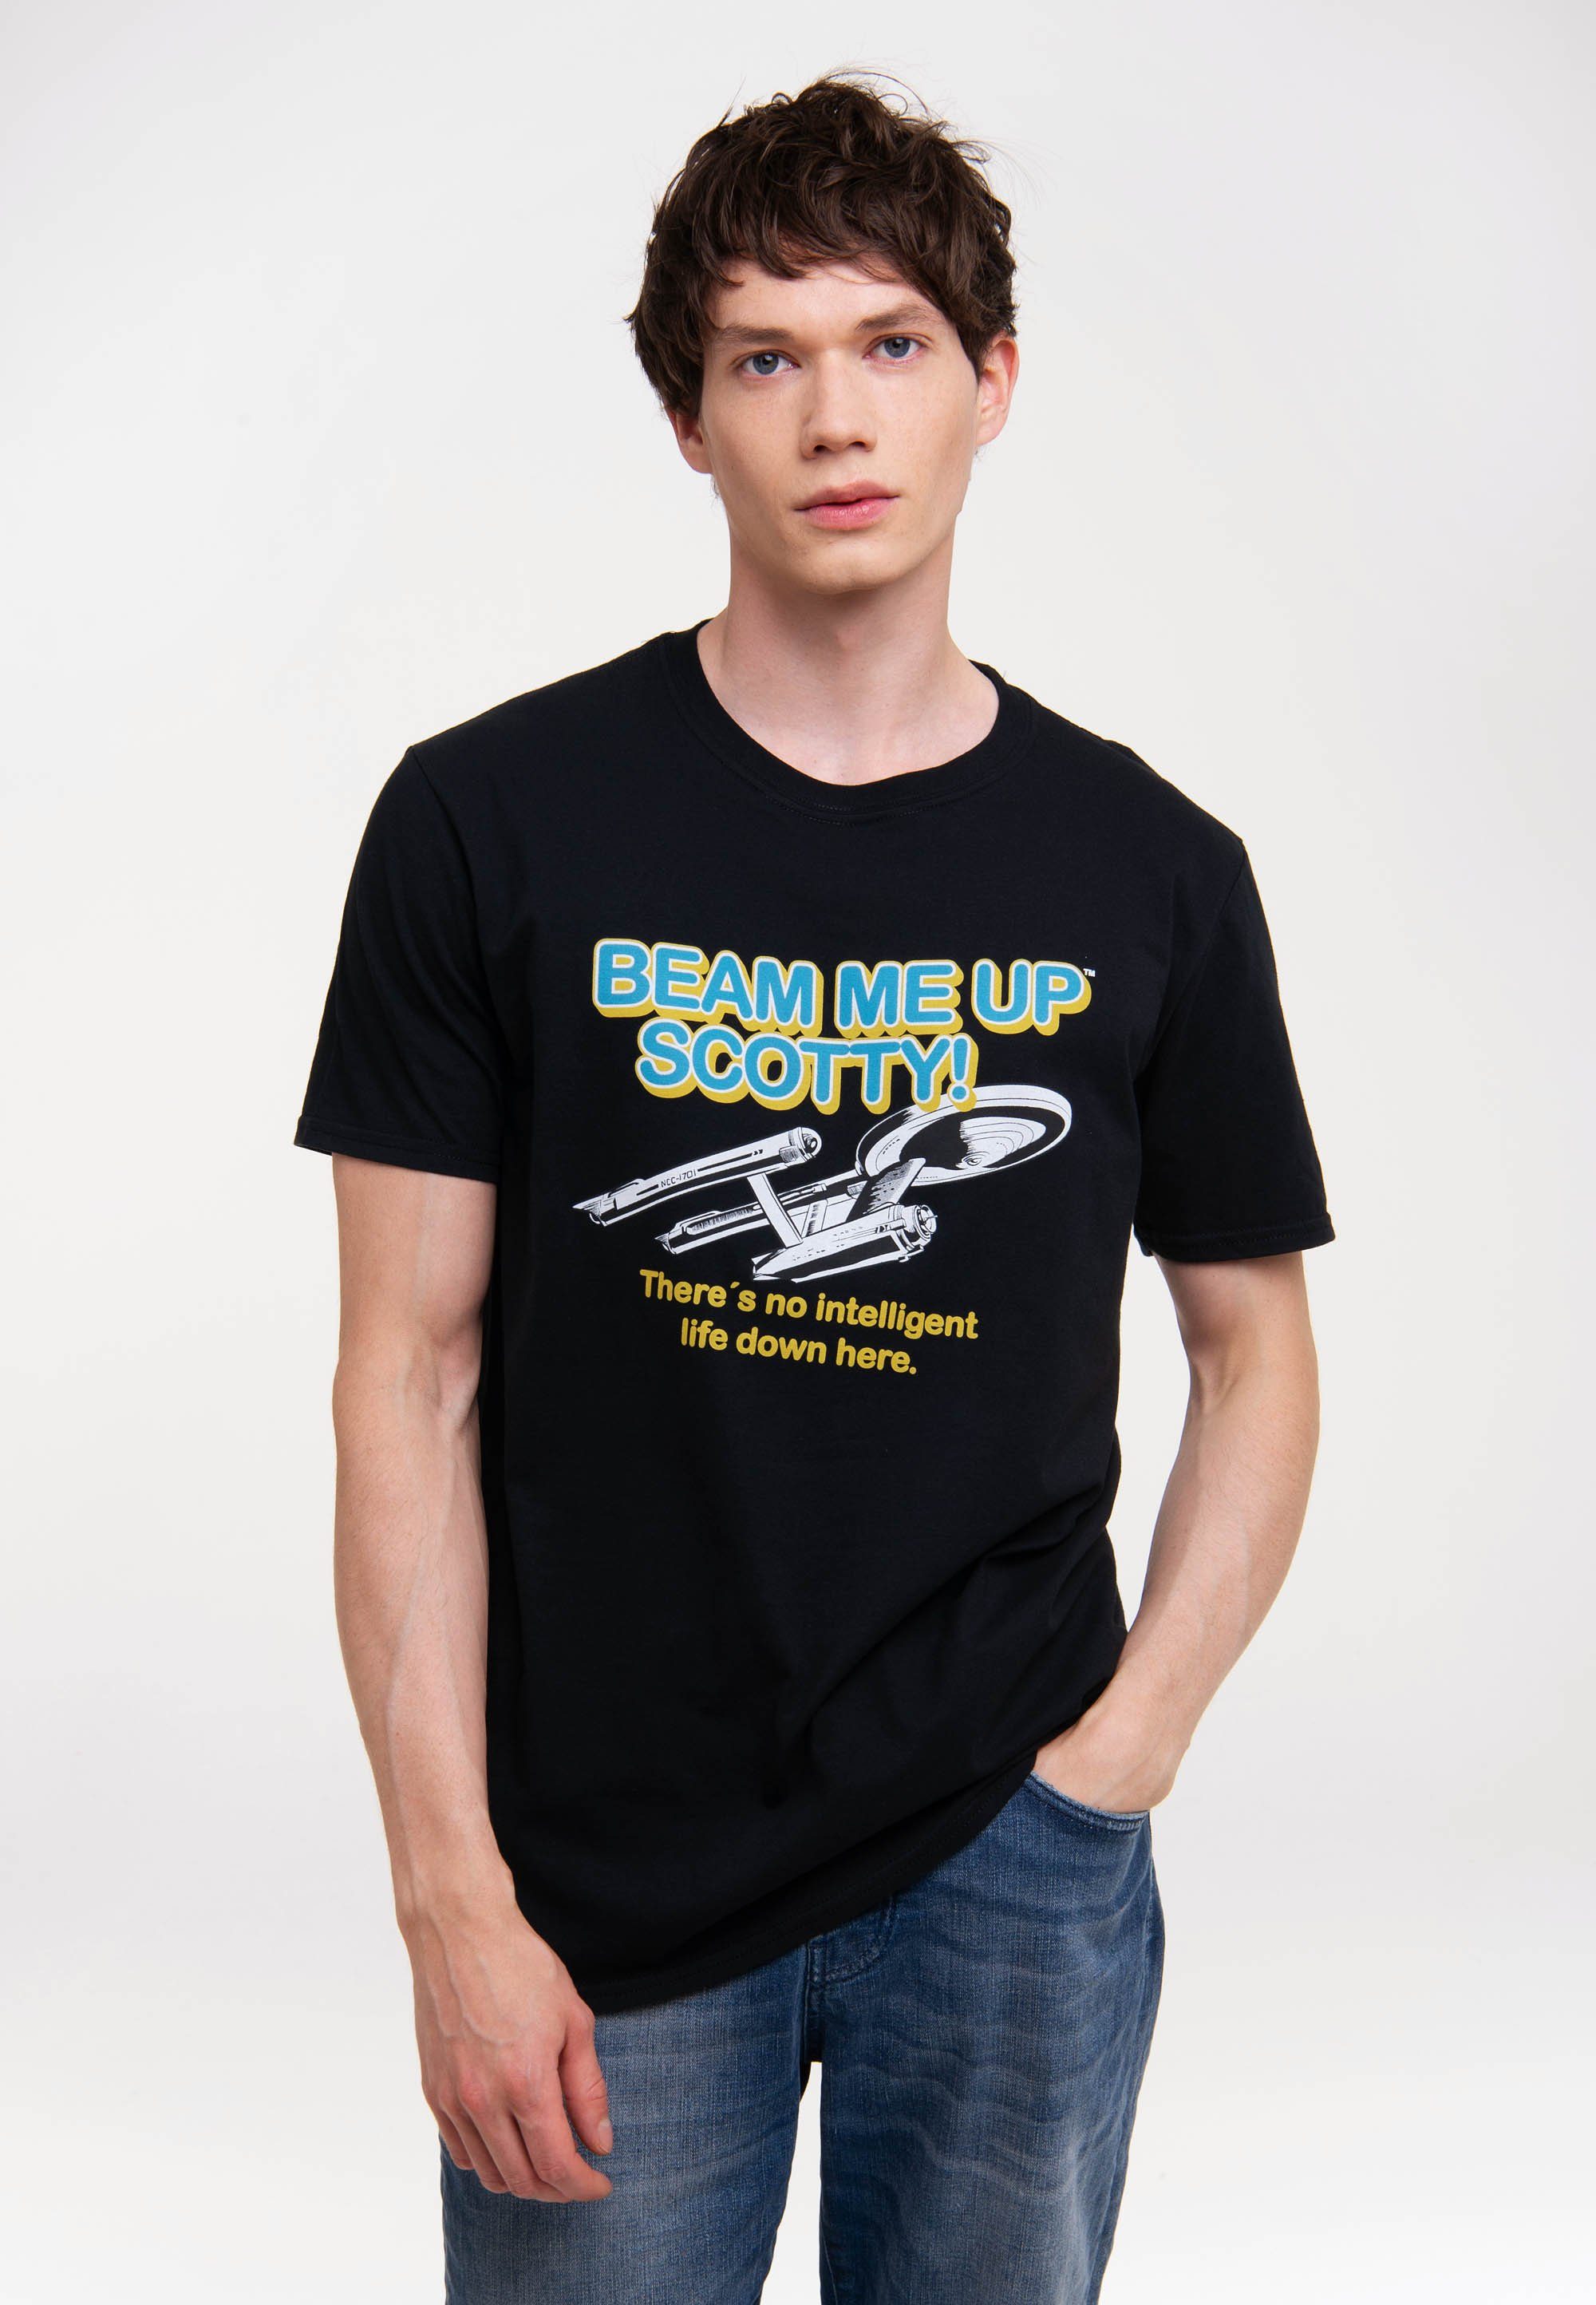 LOGOSHIRT T-Shirt Me mit Beam Star Up Up Scotty-Logo Trek Me - Beam Scotty